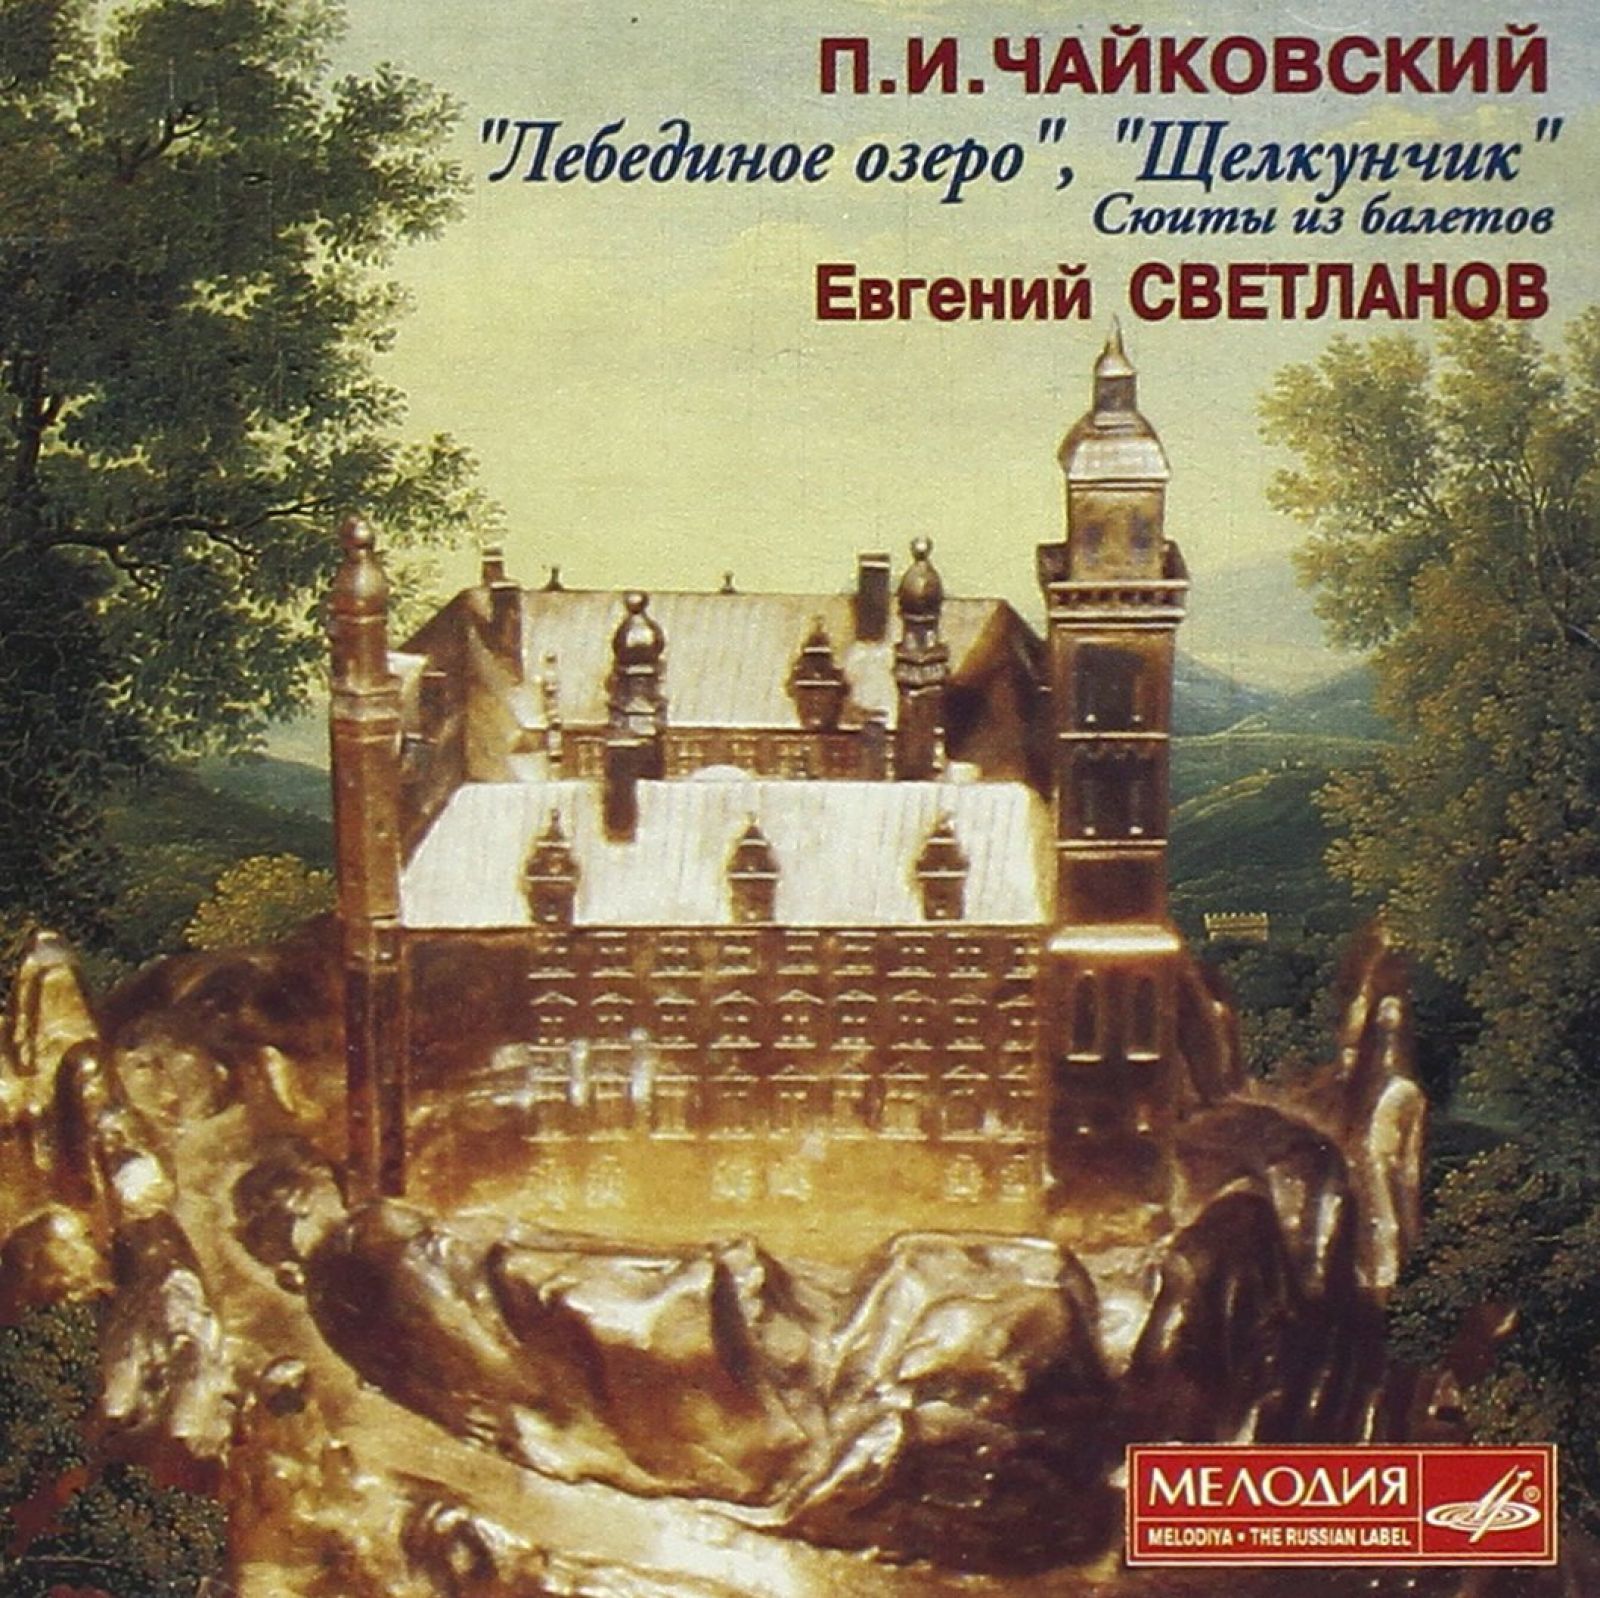 П. И. Чайковский - Щелкунчик (Евгений Светланов)